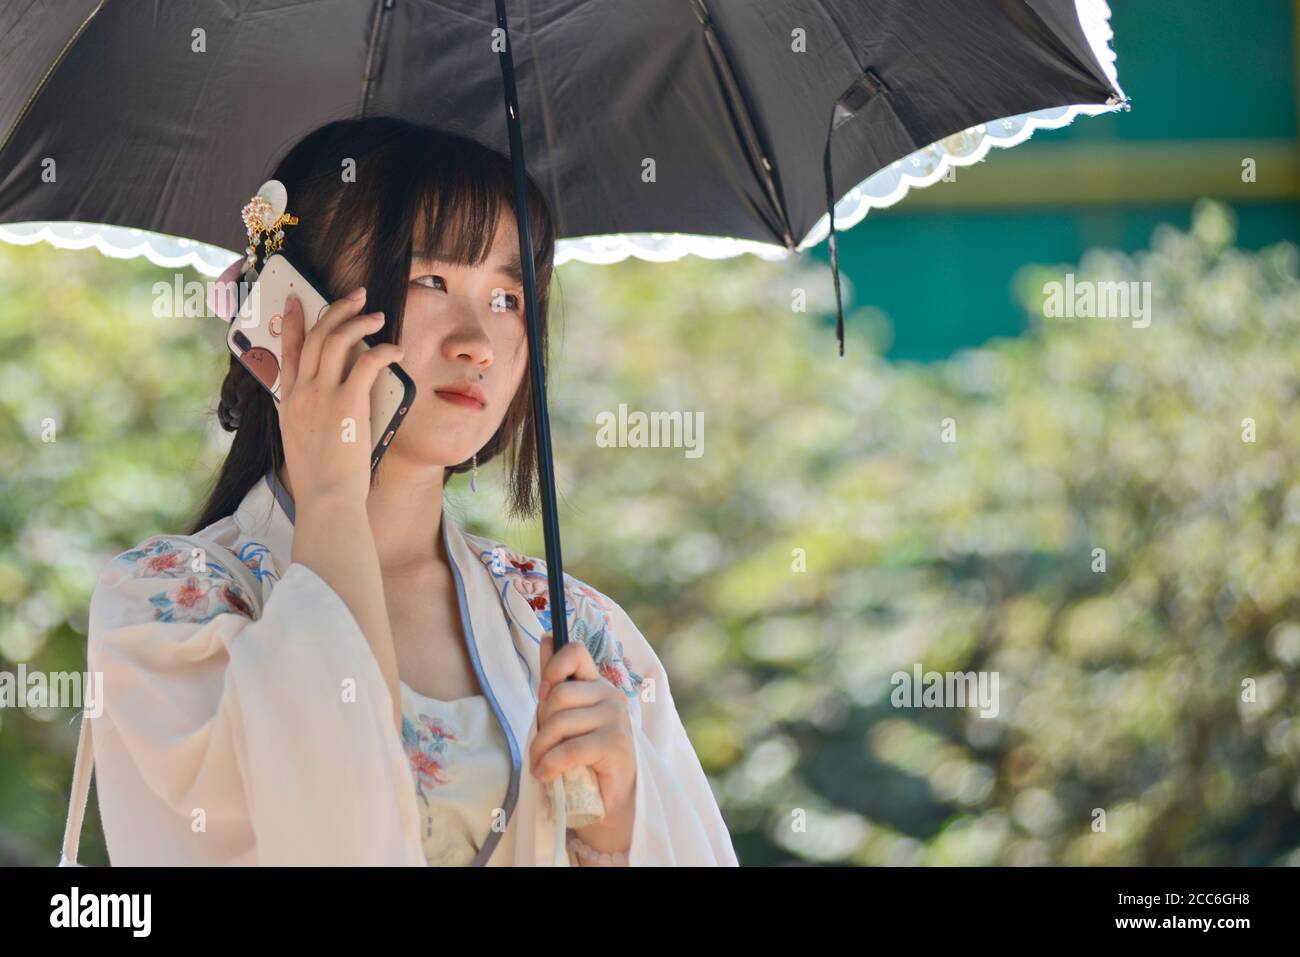 Ein chinesisches junges Mädchen, das mit traditioneller Kleidung und Regenschirm gekleidet ist und mit ihrem Handy spricht. Jianghan Road, Wuhan, China Stockfoto